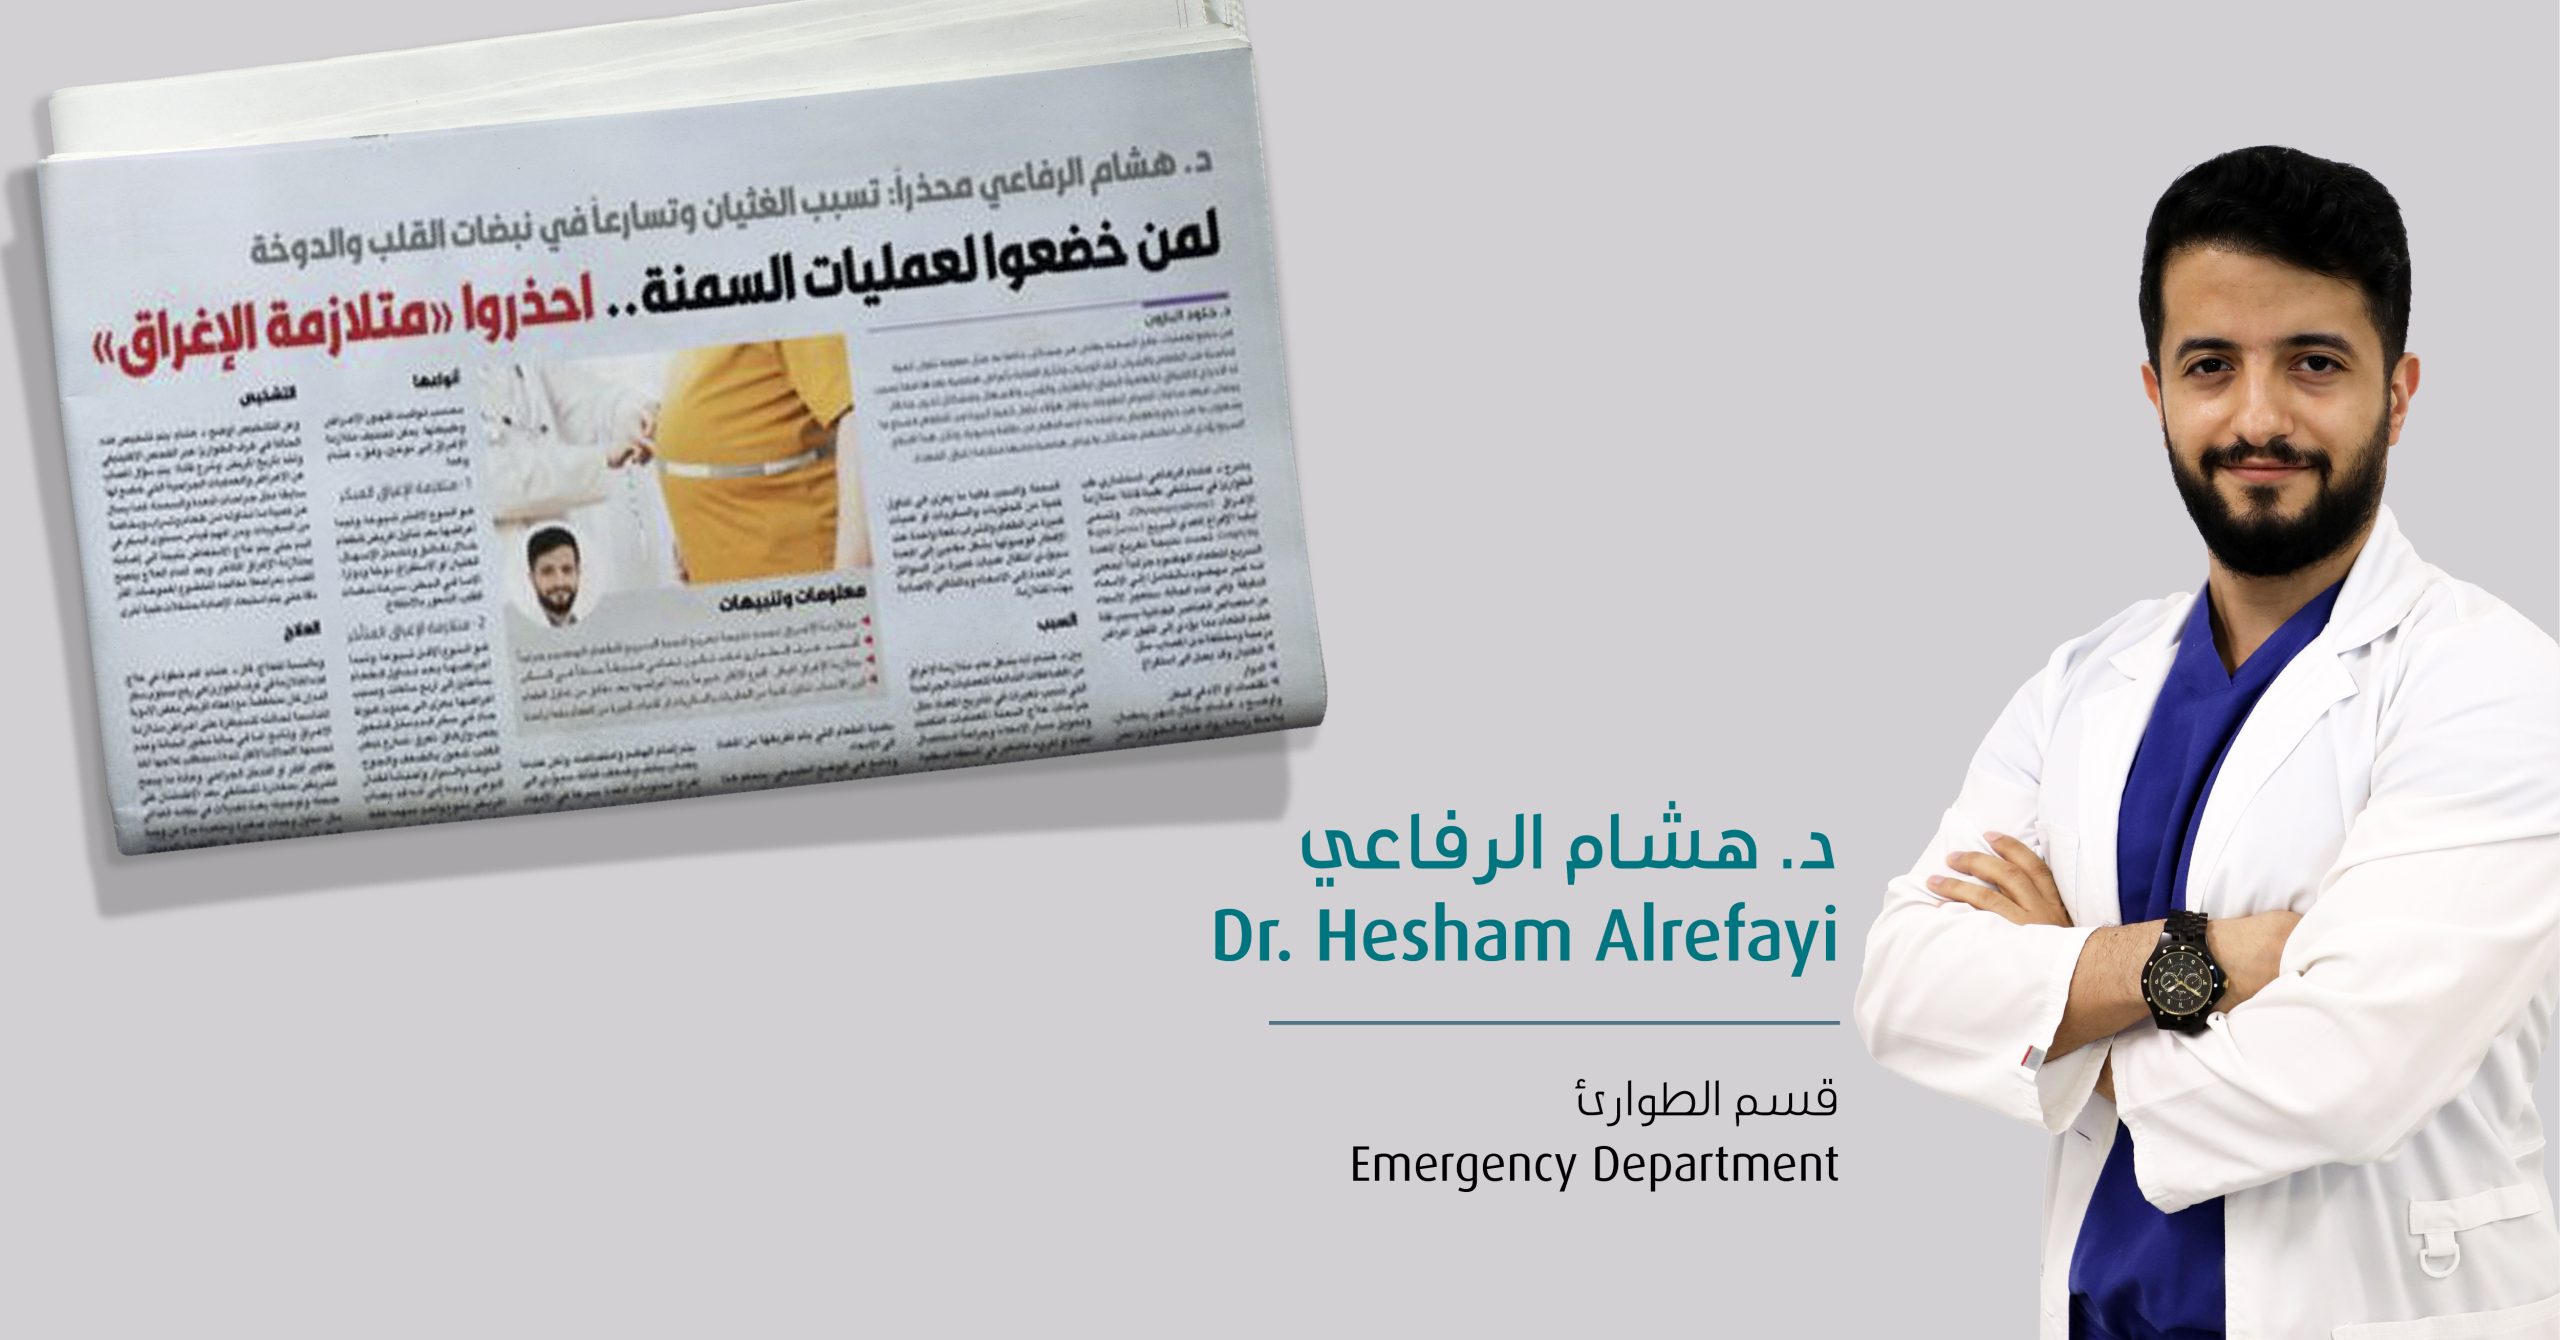 Interview with Dr. Hesham Al-Refayi by Al-Qabas newspaper.